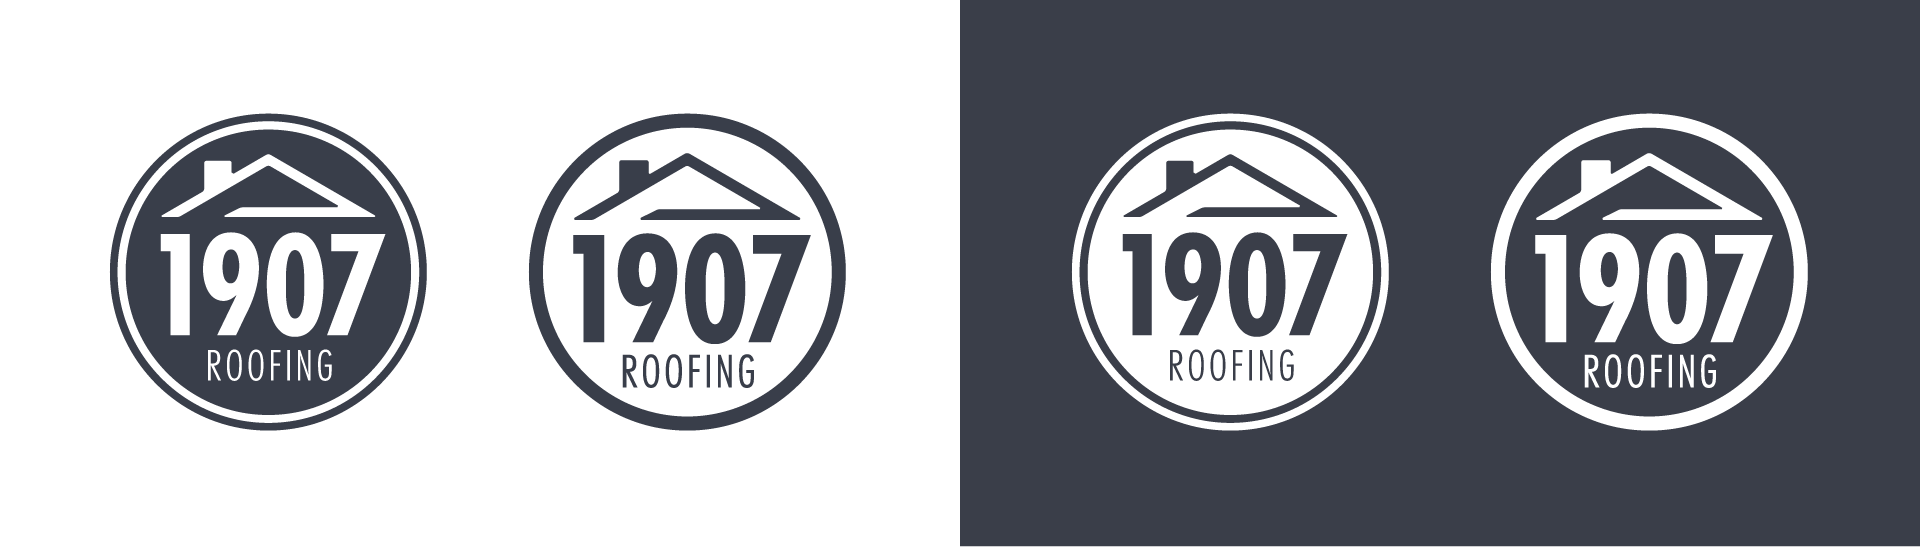 1907 Roofing final logo design.